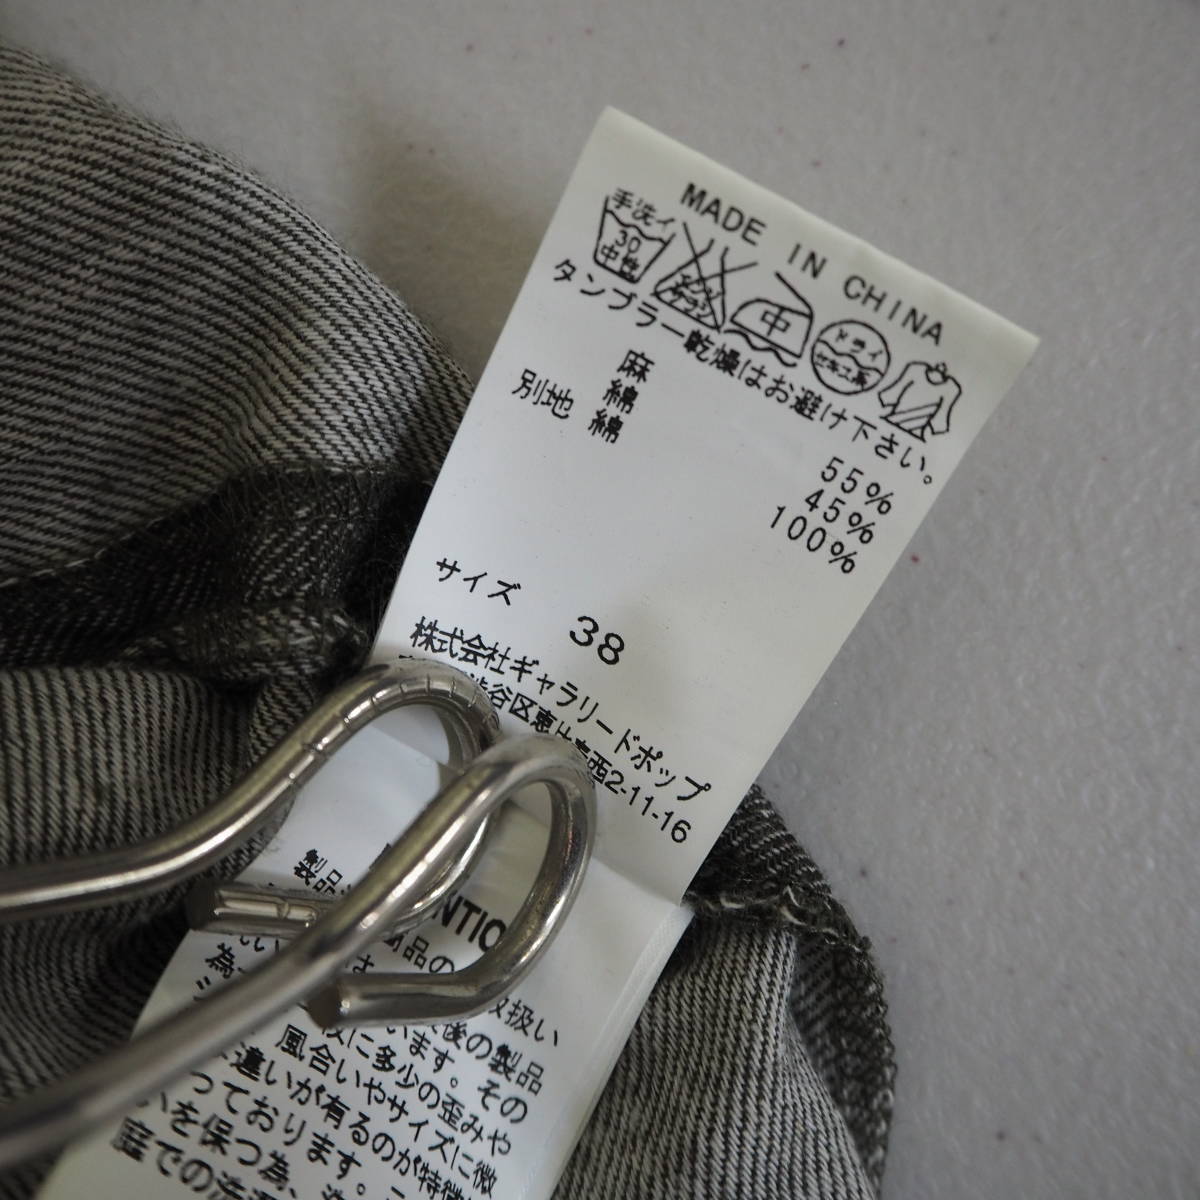  бесплатная доставка pas de calais pas de calais юбка в сборку размер 38linen× хлопок длинная юбка 